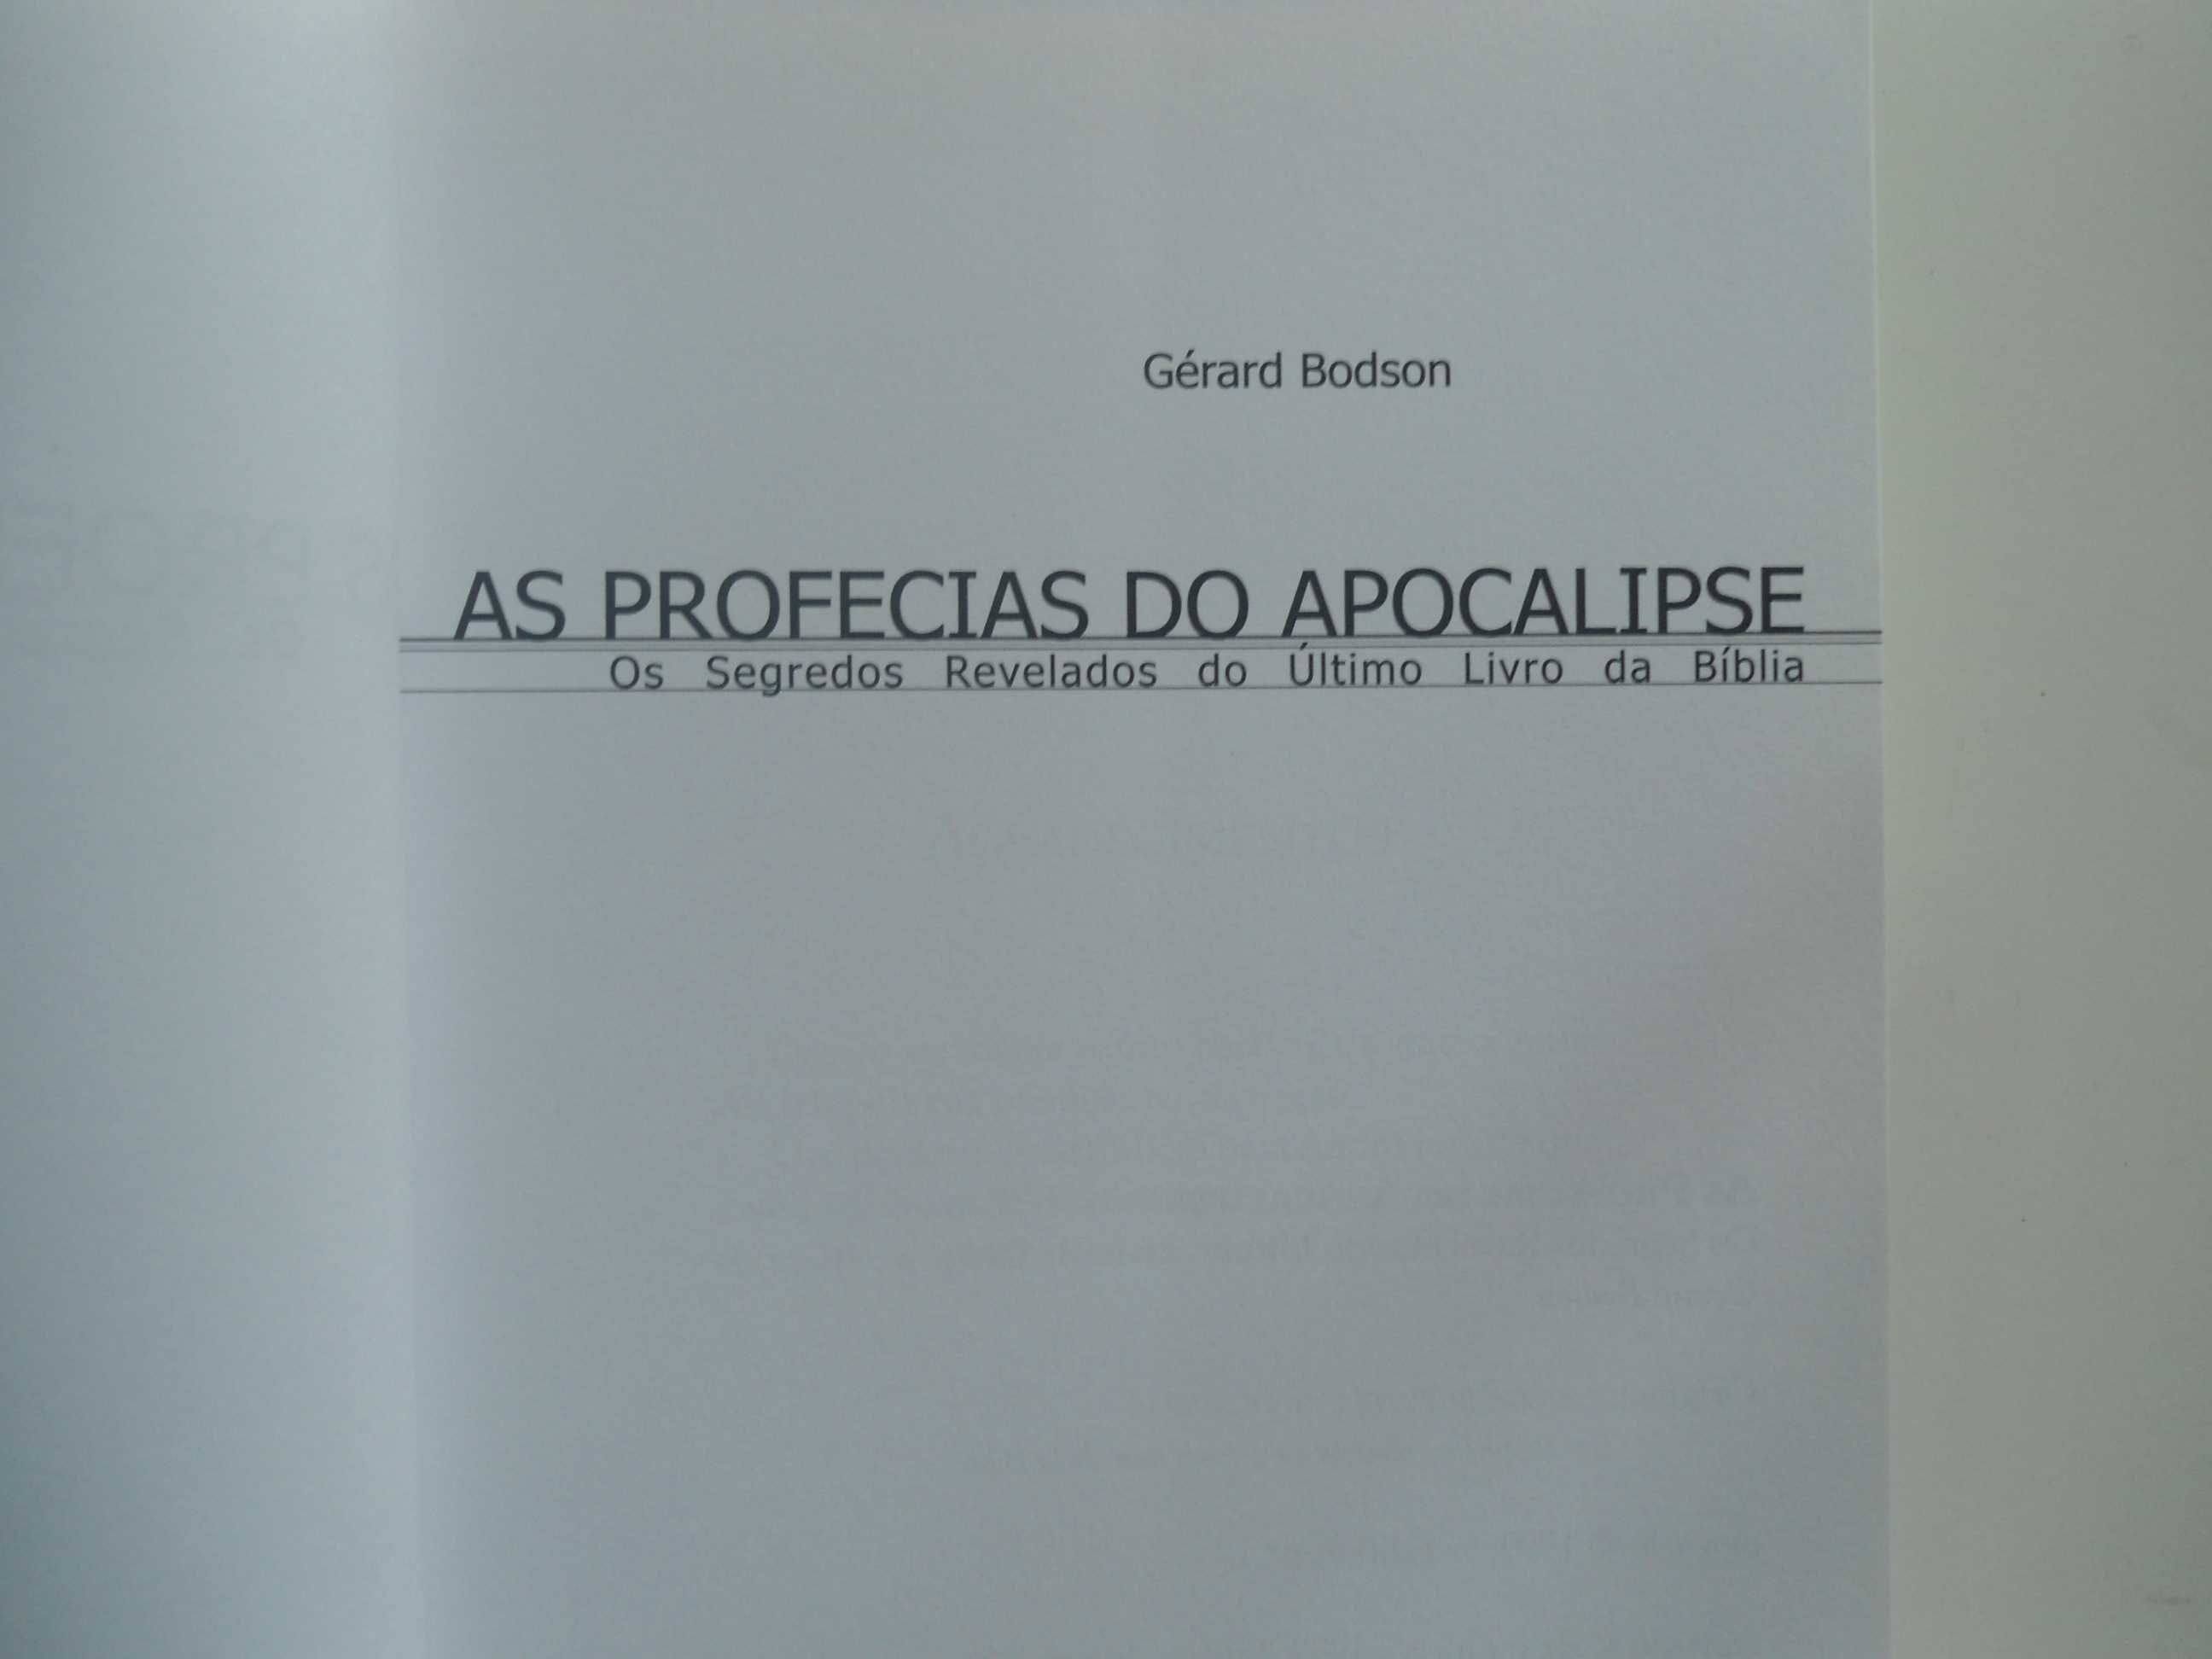 As Profecias do Apocalipse por Gérard Bodson